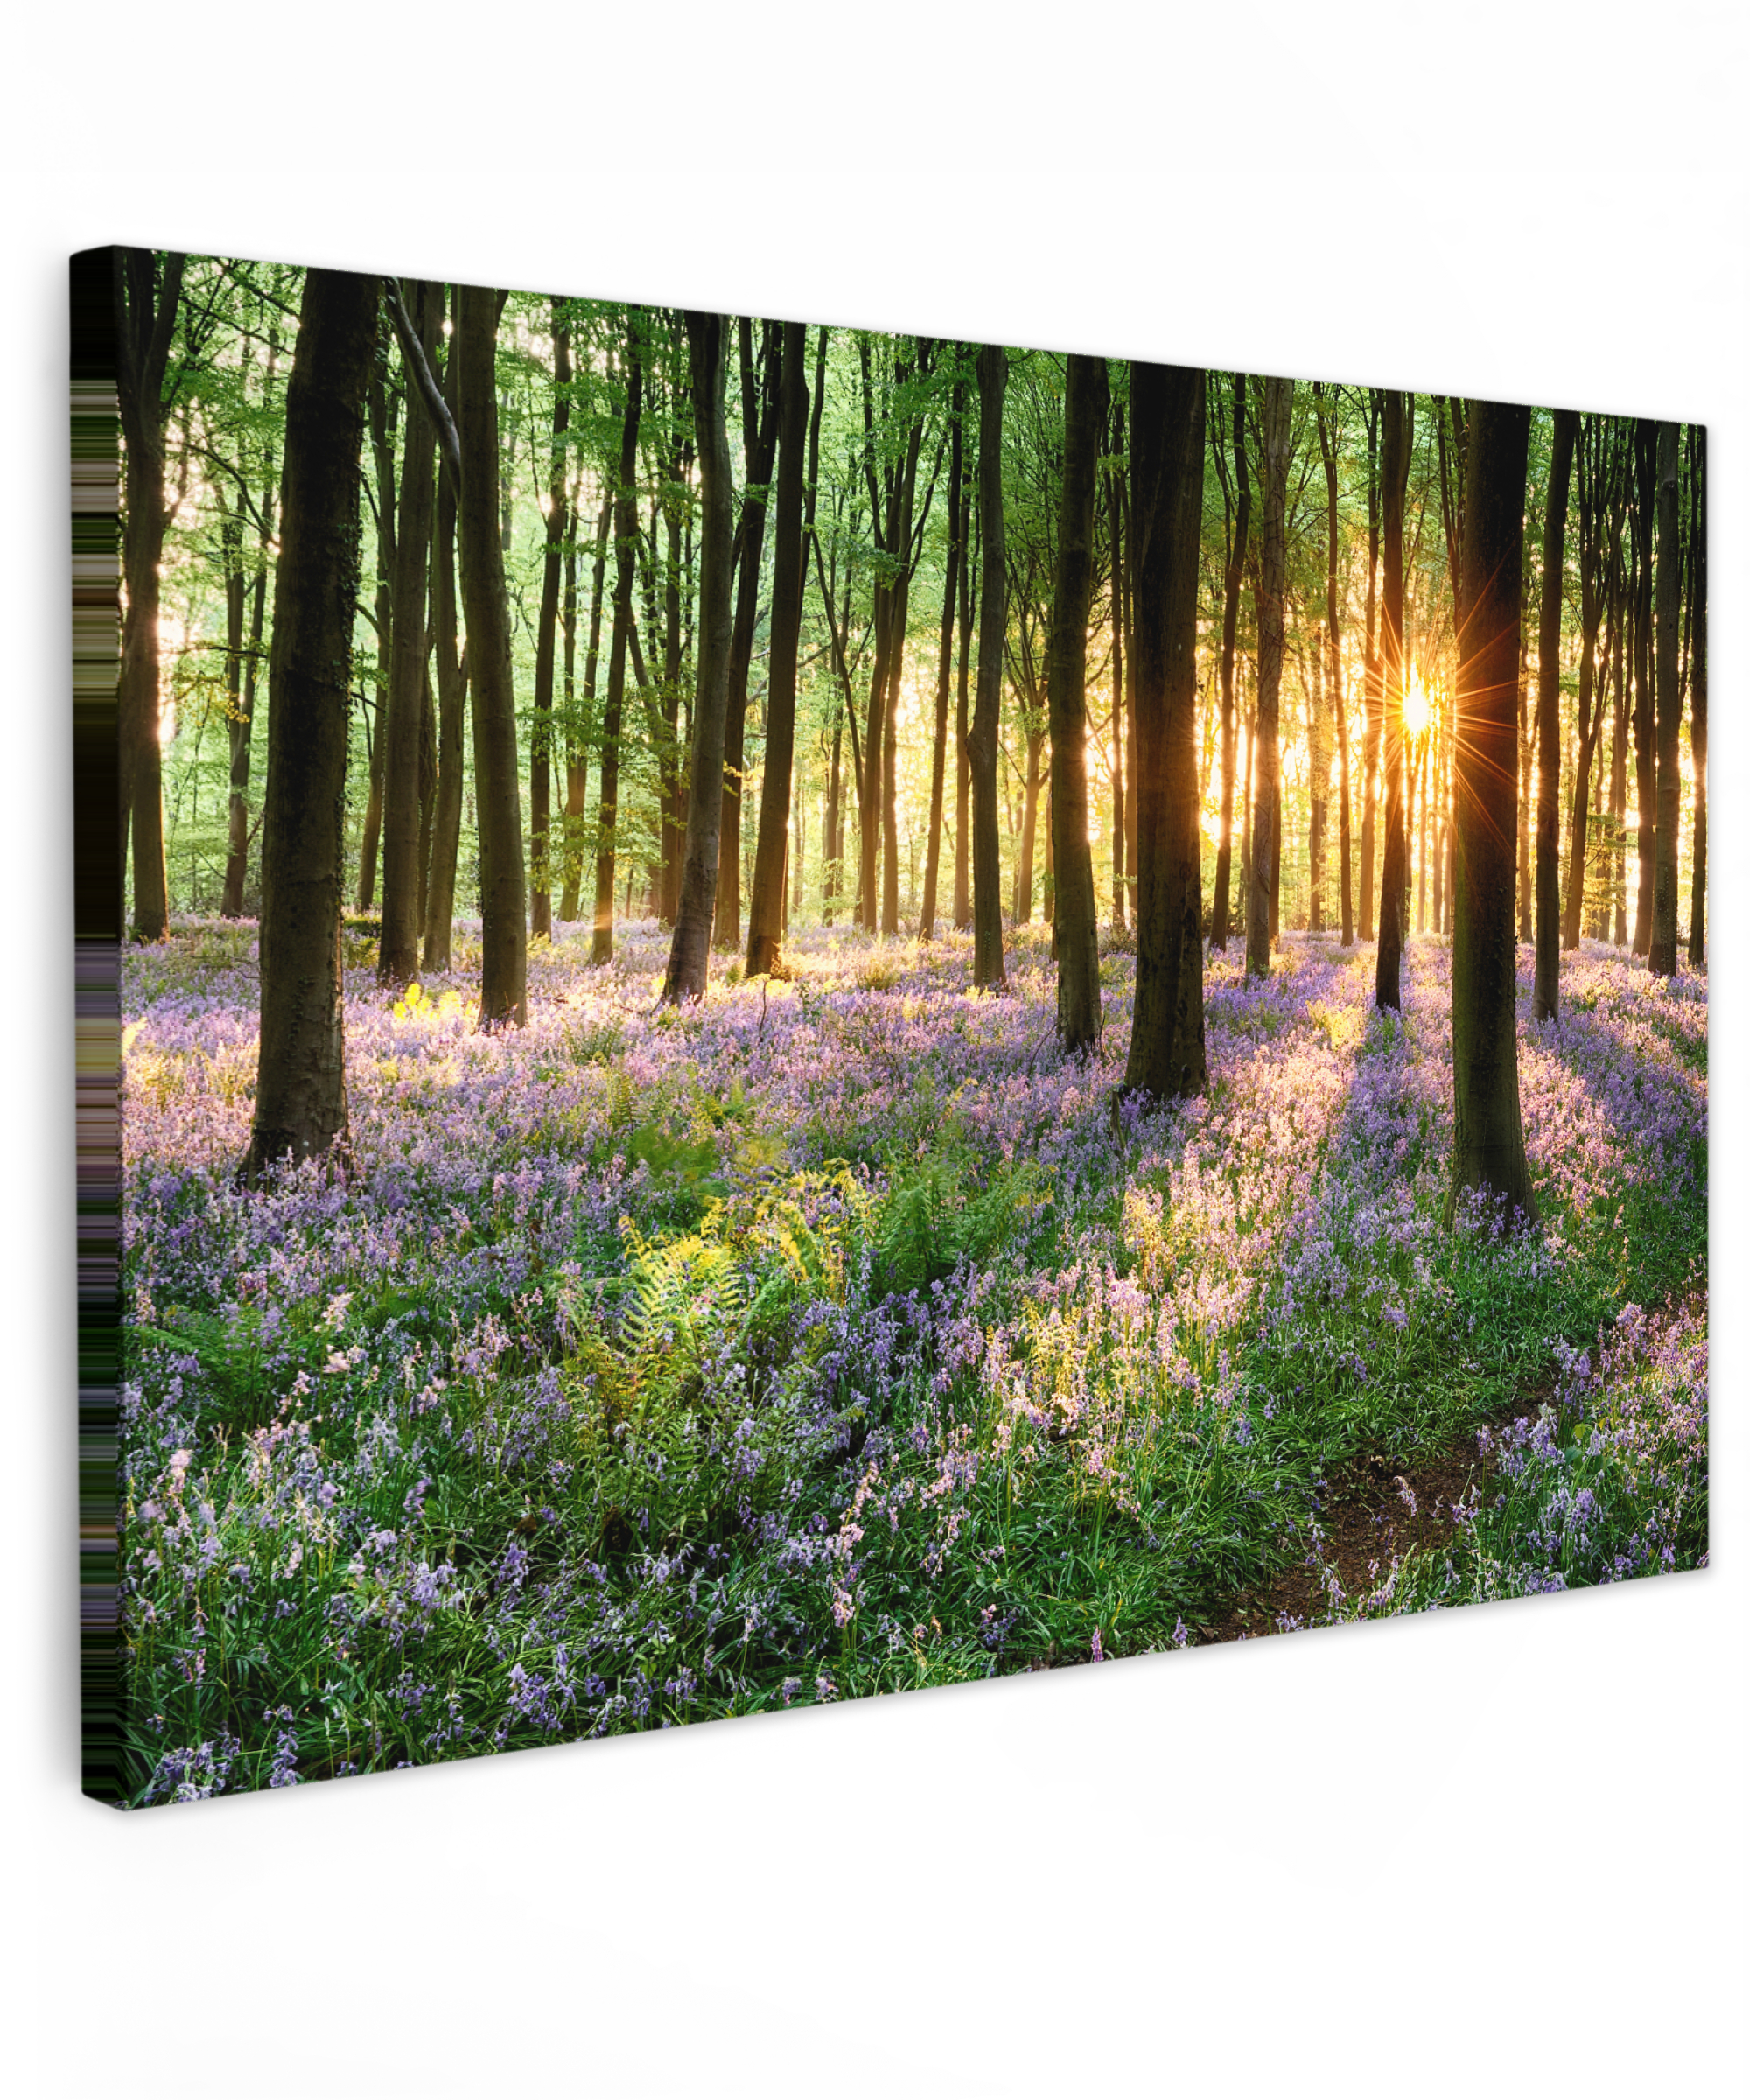 Tableau sur toile - Forêt - Nature - Fleurs - Soleil - Arbre - Violet